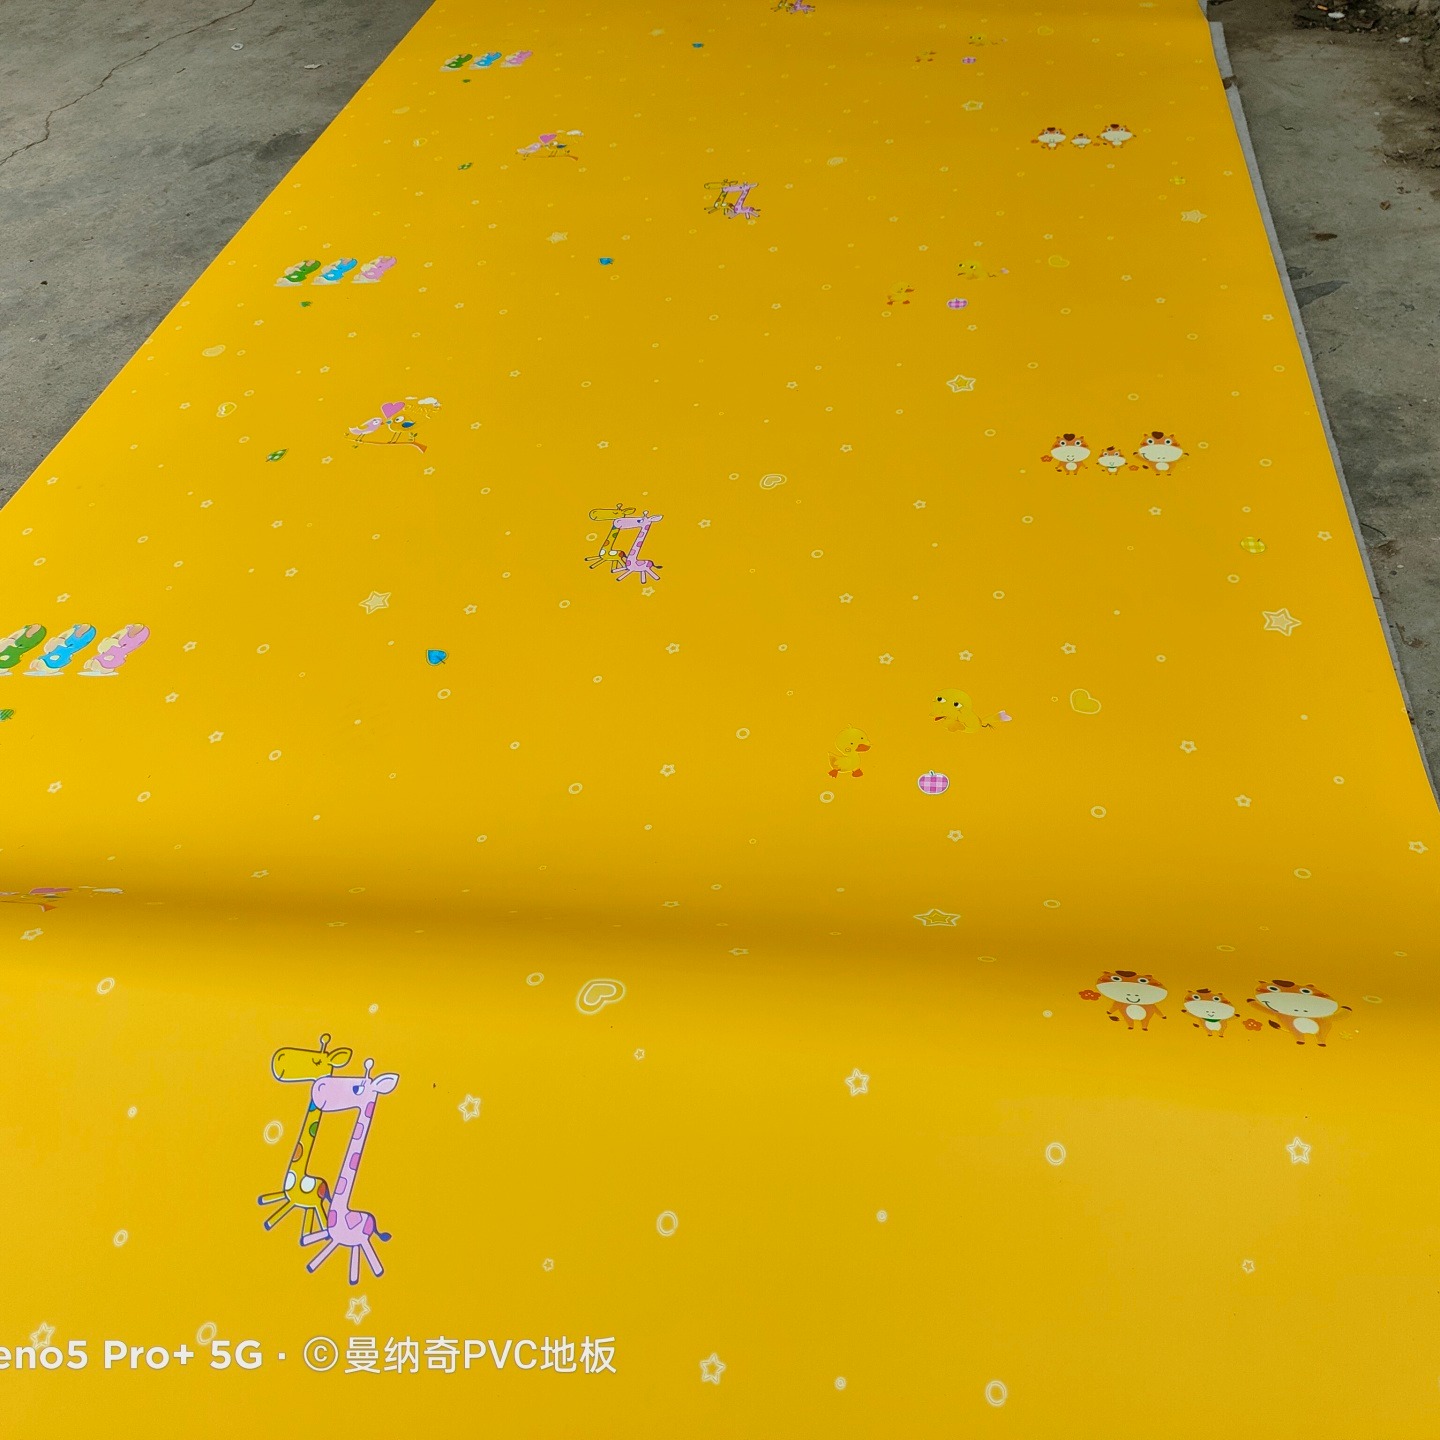 镇雄幼儿园塑胶地板 幼儿园塑胶地板施工 镇雄塑胶地板铺装 镇雄塑胶地板铺装厂家